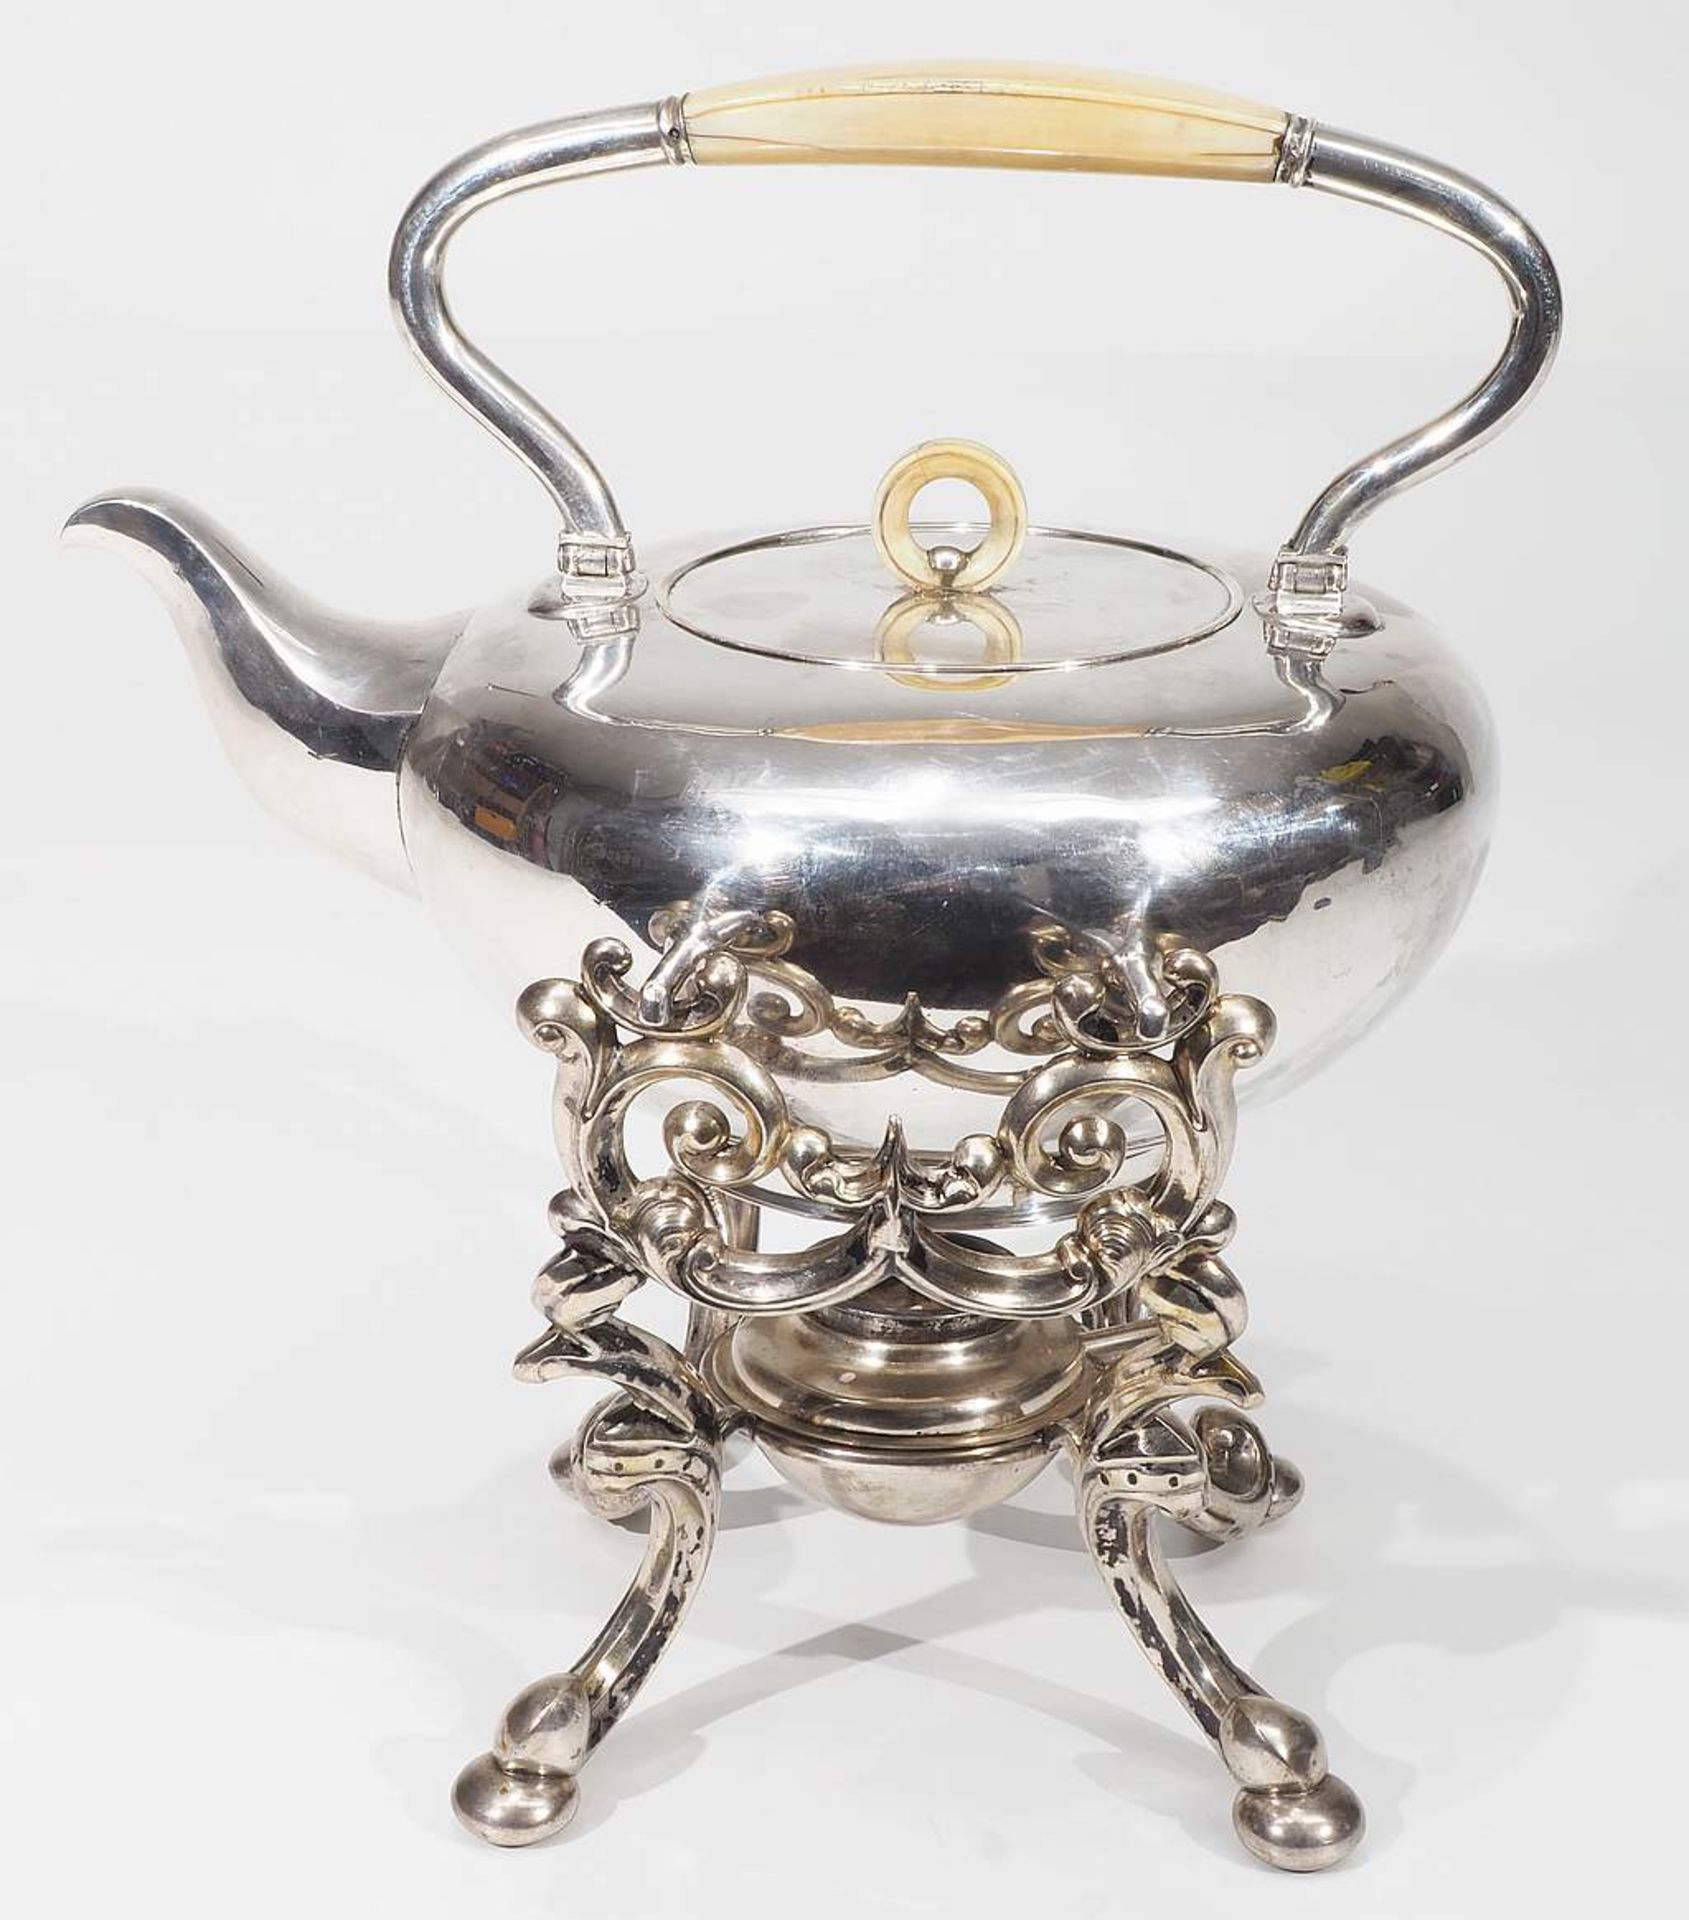 Teekessel auf Rechaud, 12 Lot Silber, um 1800 - etwa 1857, ( = 750er Silber ). Hofjuwelier Haller & - Bild 2 aus 7